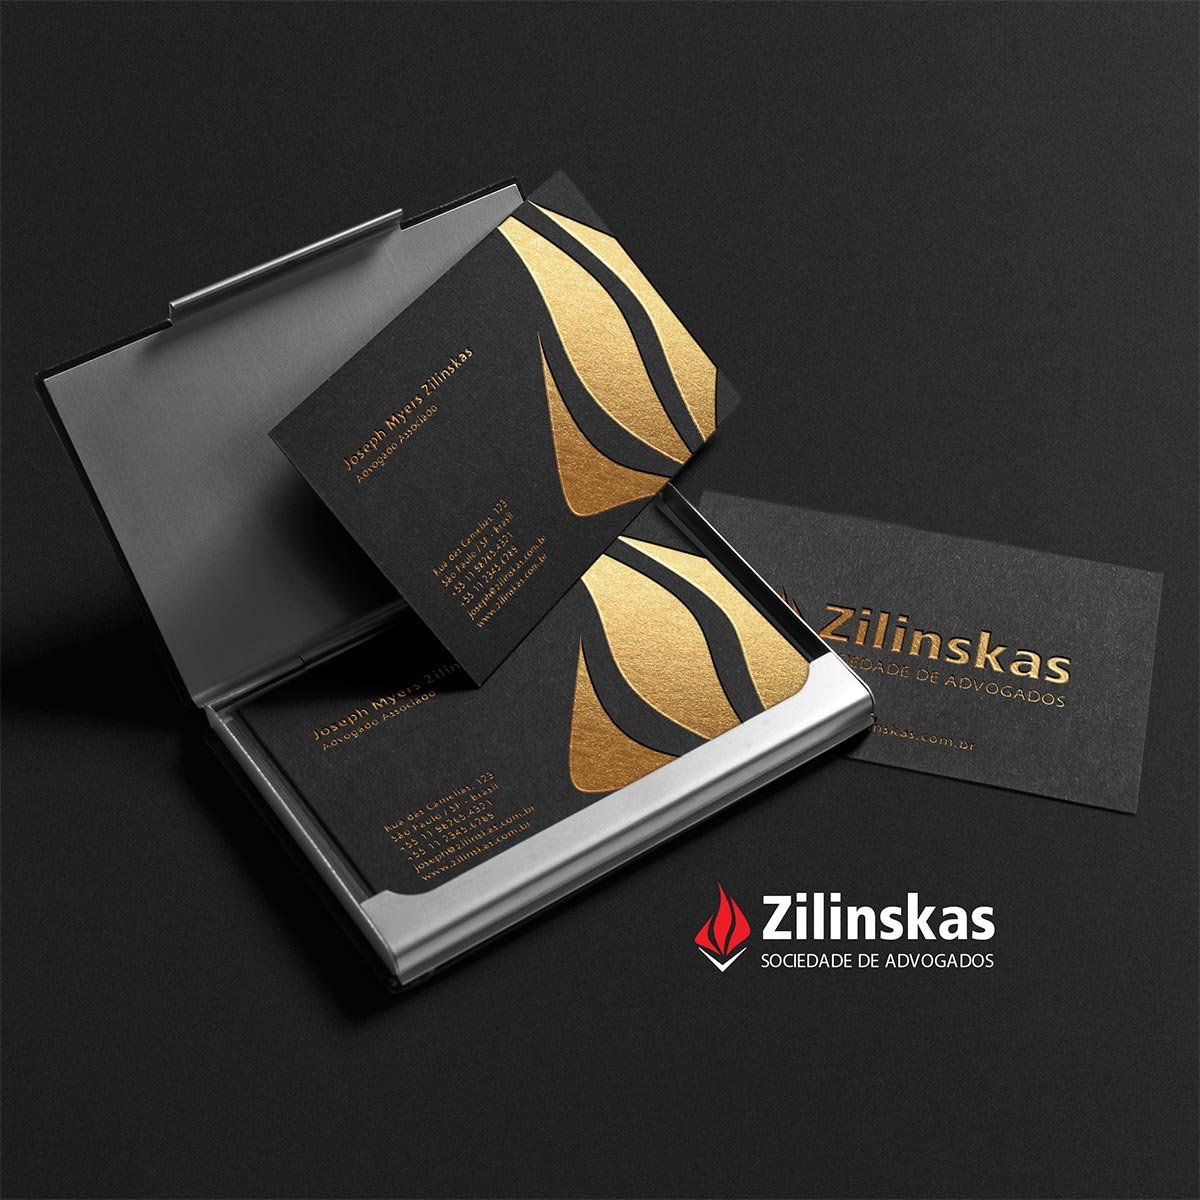 Zilinskas Sociedade de Advogados